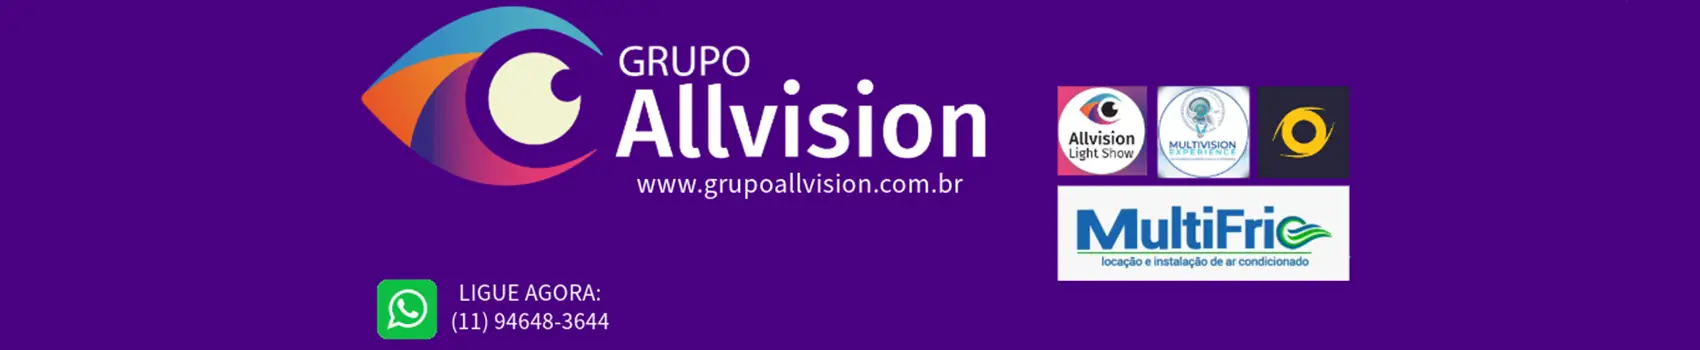 Grupo Allvision